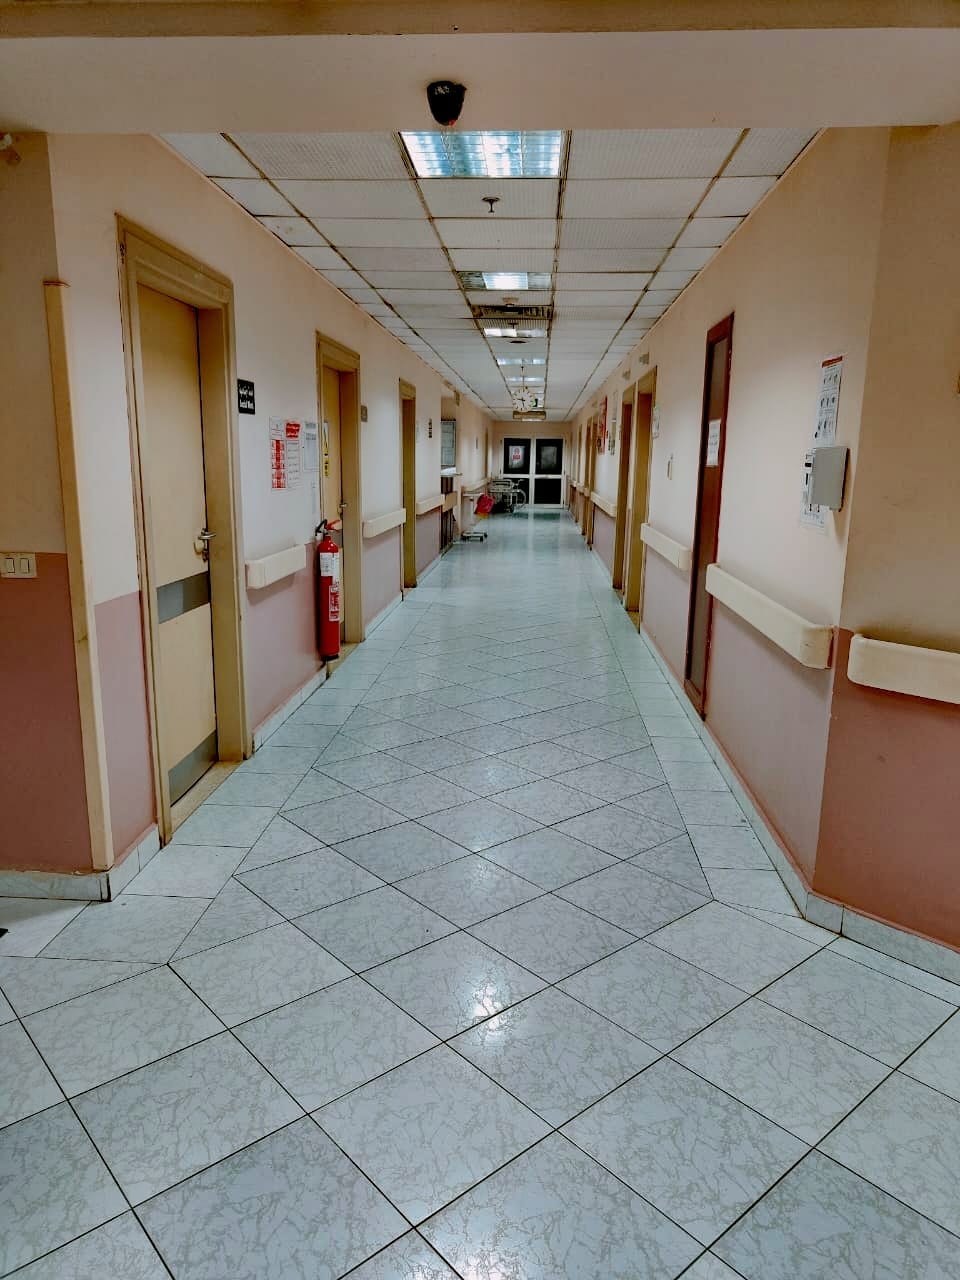 المستشفى من الداخل